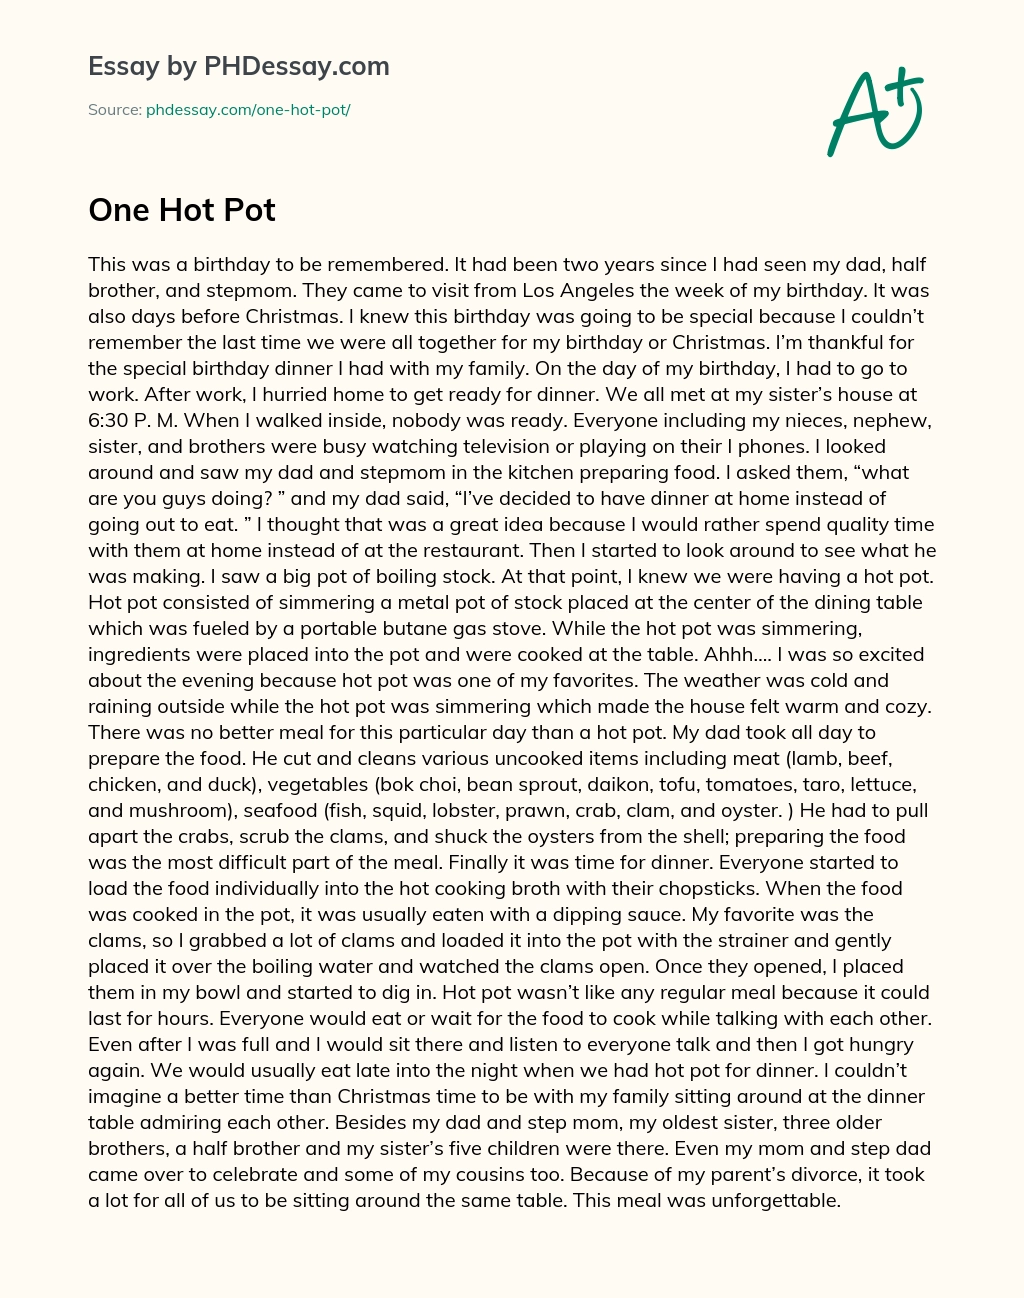 One Hot Pot essay